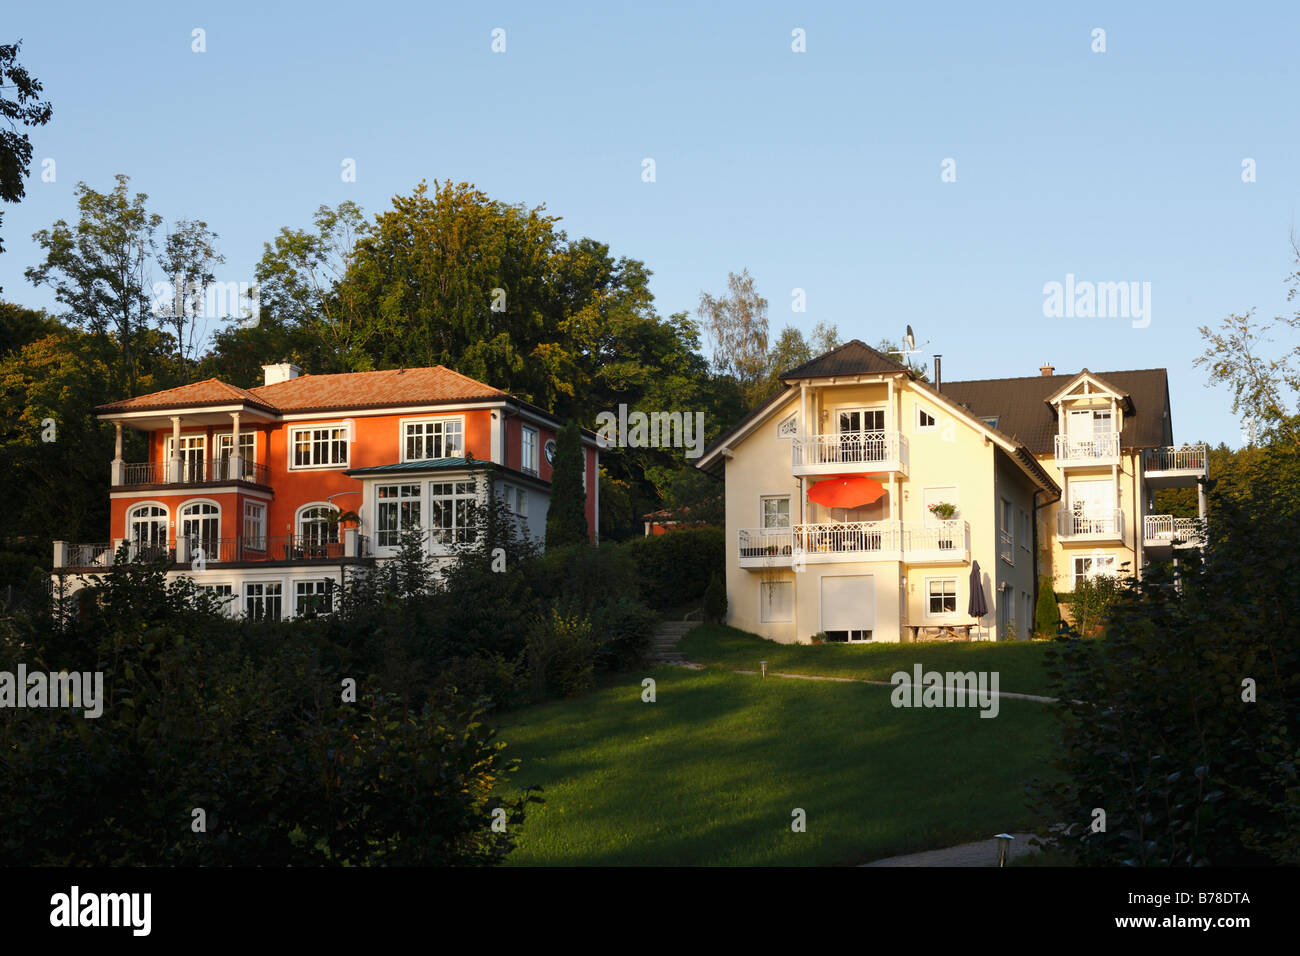 Maisons de Ambach, commune de Muensing, sur le Lac de Starnberg, Upper Bavaria, Germany, Europe Banque D'Images